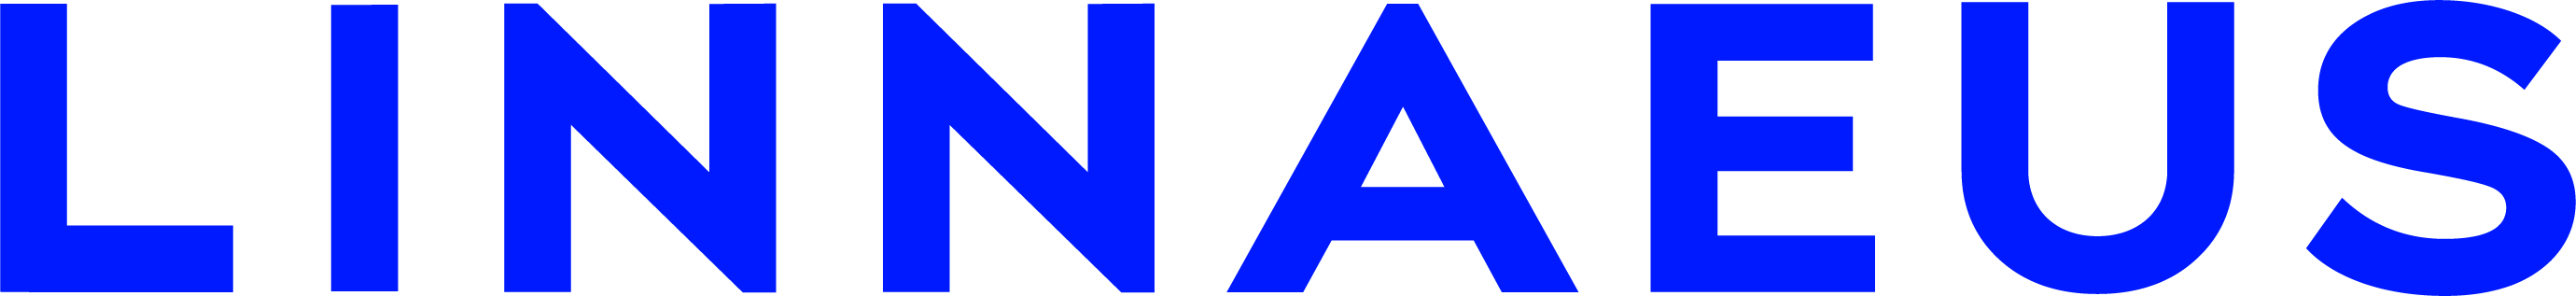 Linnaeus logo